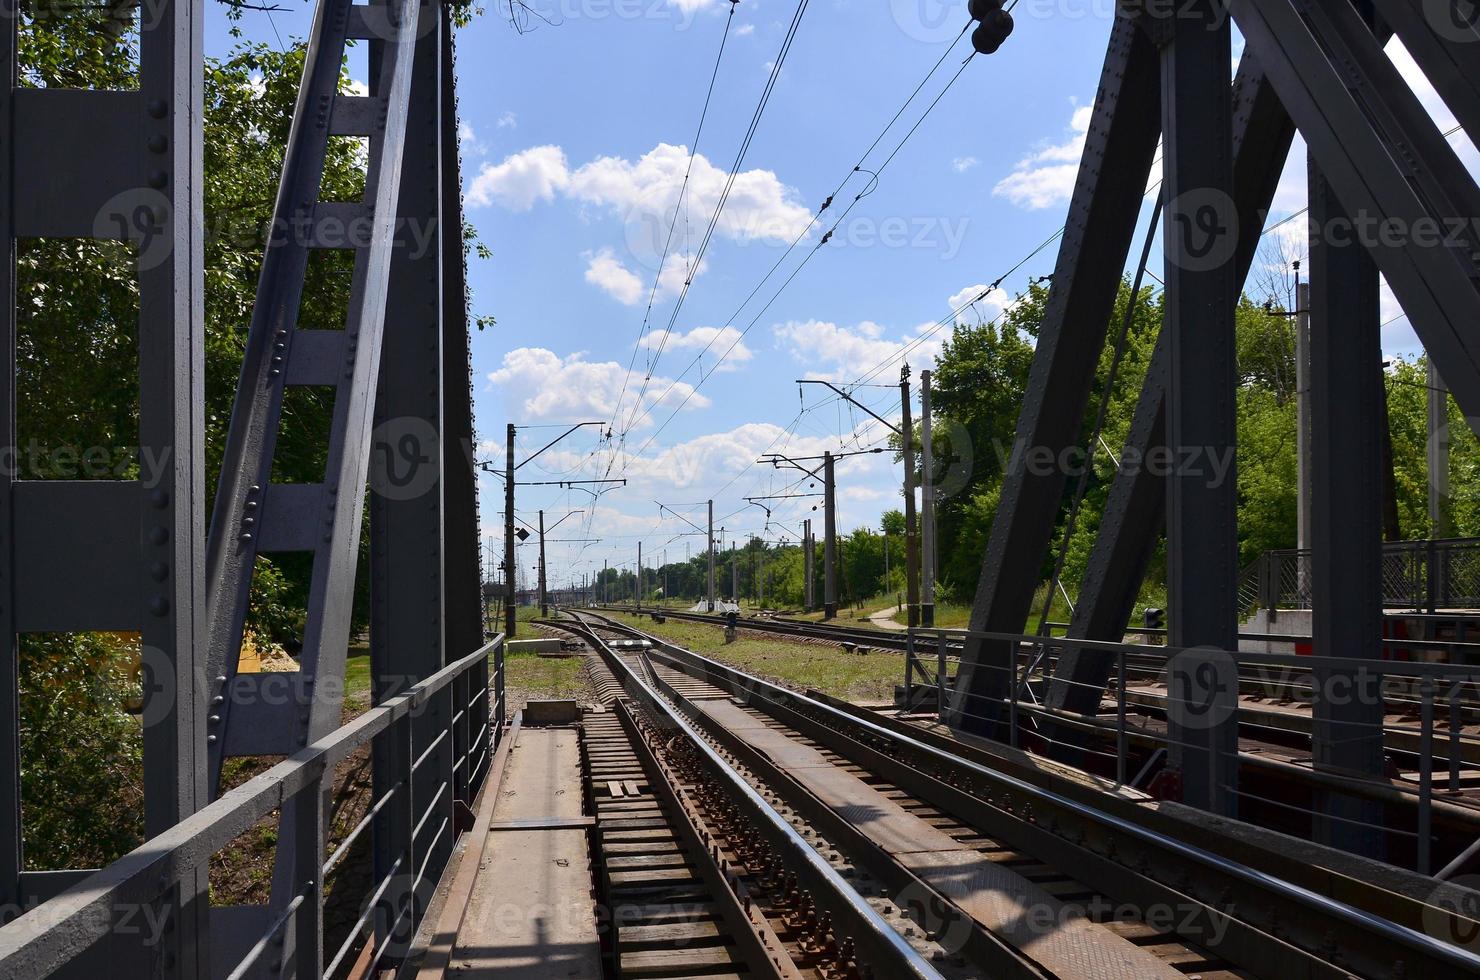 zomer dag spoorweg landschap met een visie van de spoorweg brug naar de buitenwijk passagier station foto